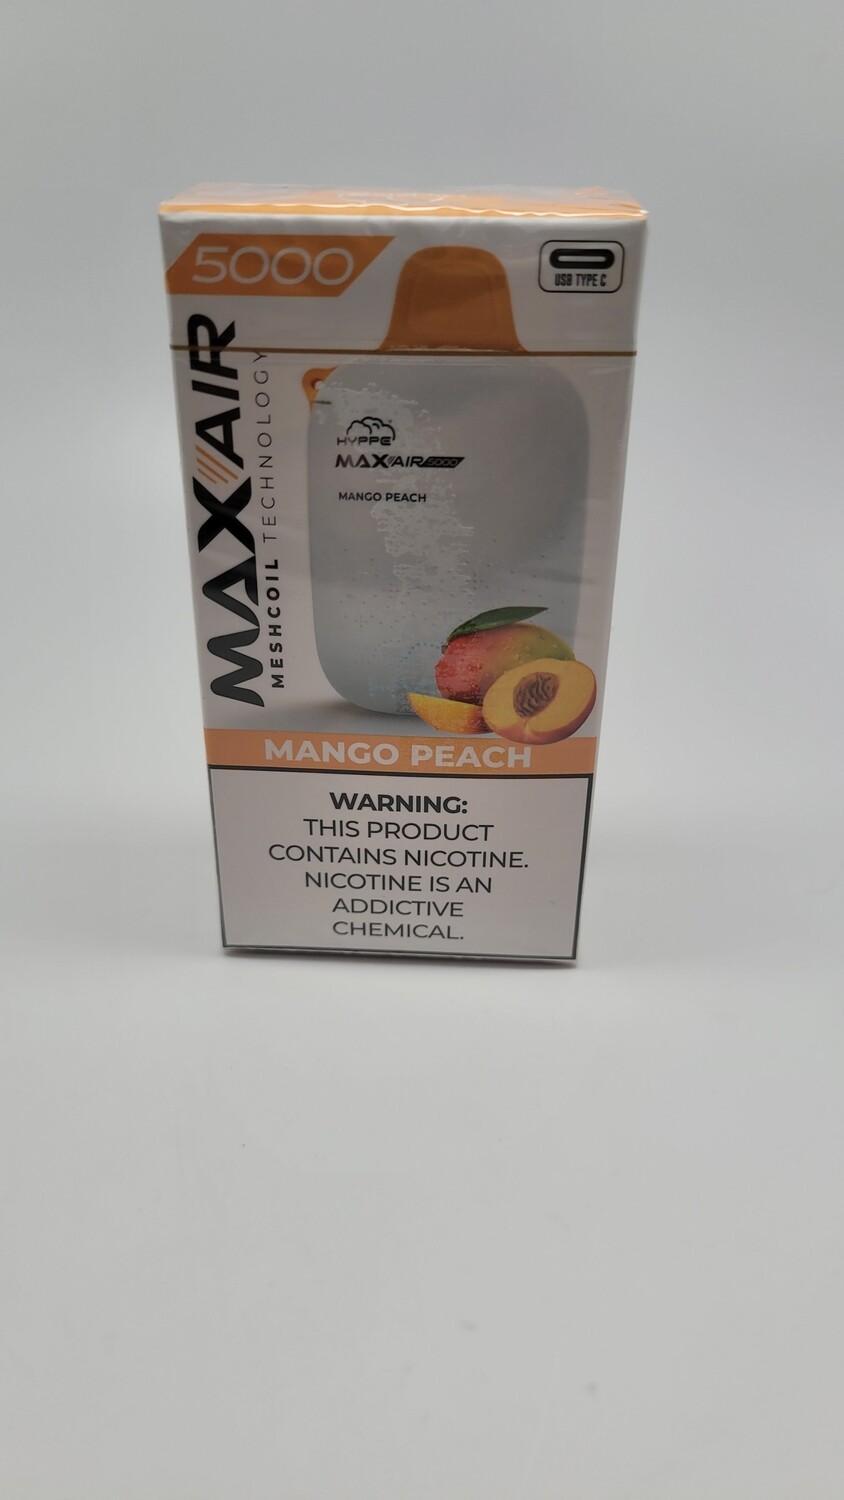 Hyppe Max Air 5000 Mango Peach